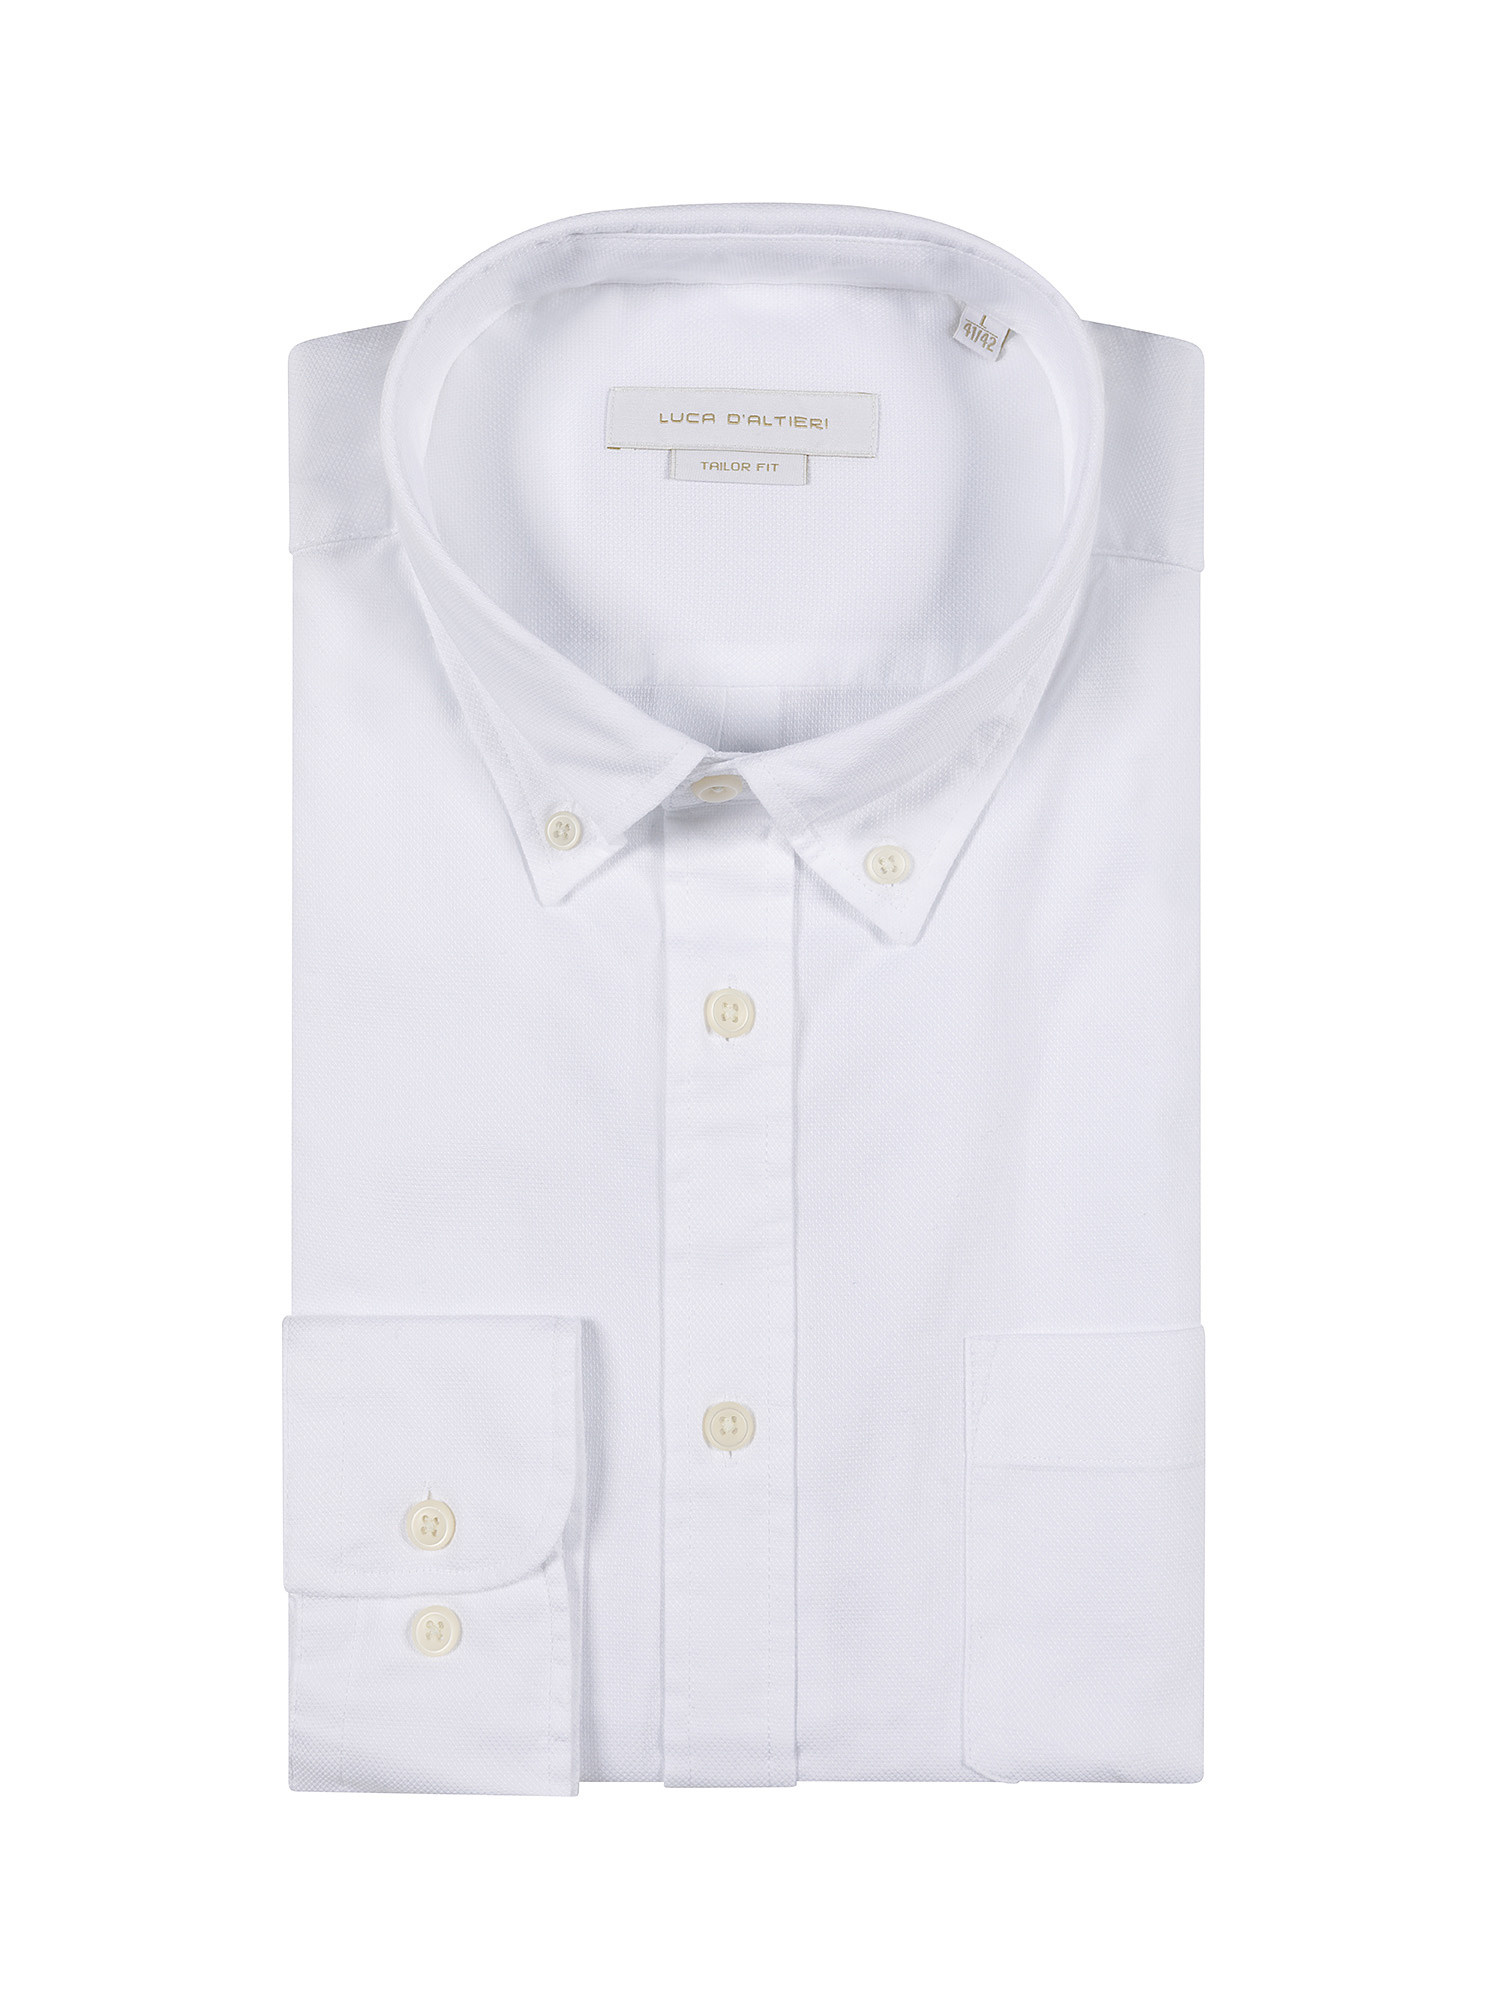 Camicia tailor fit tessuto armaturato, Bianco, large